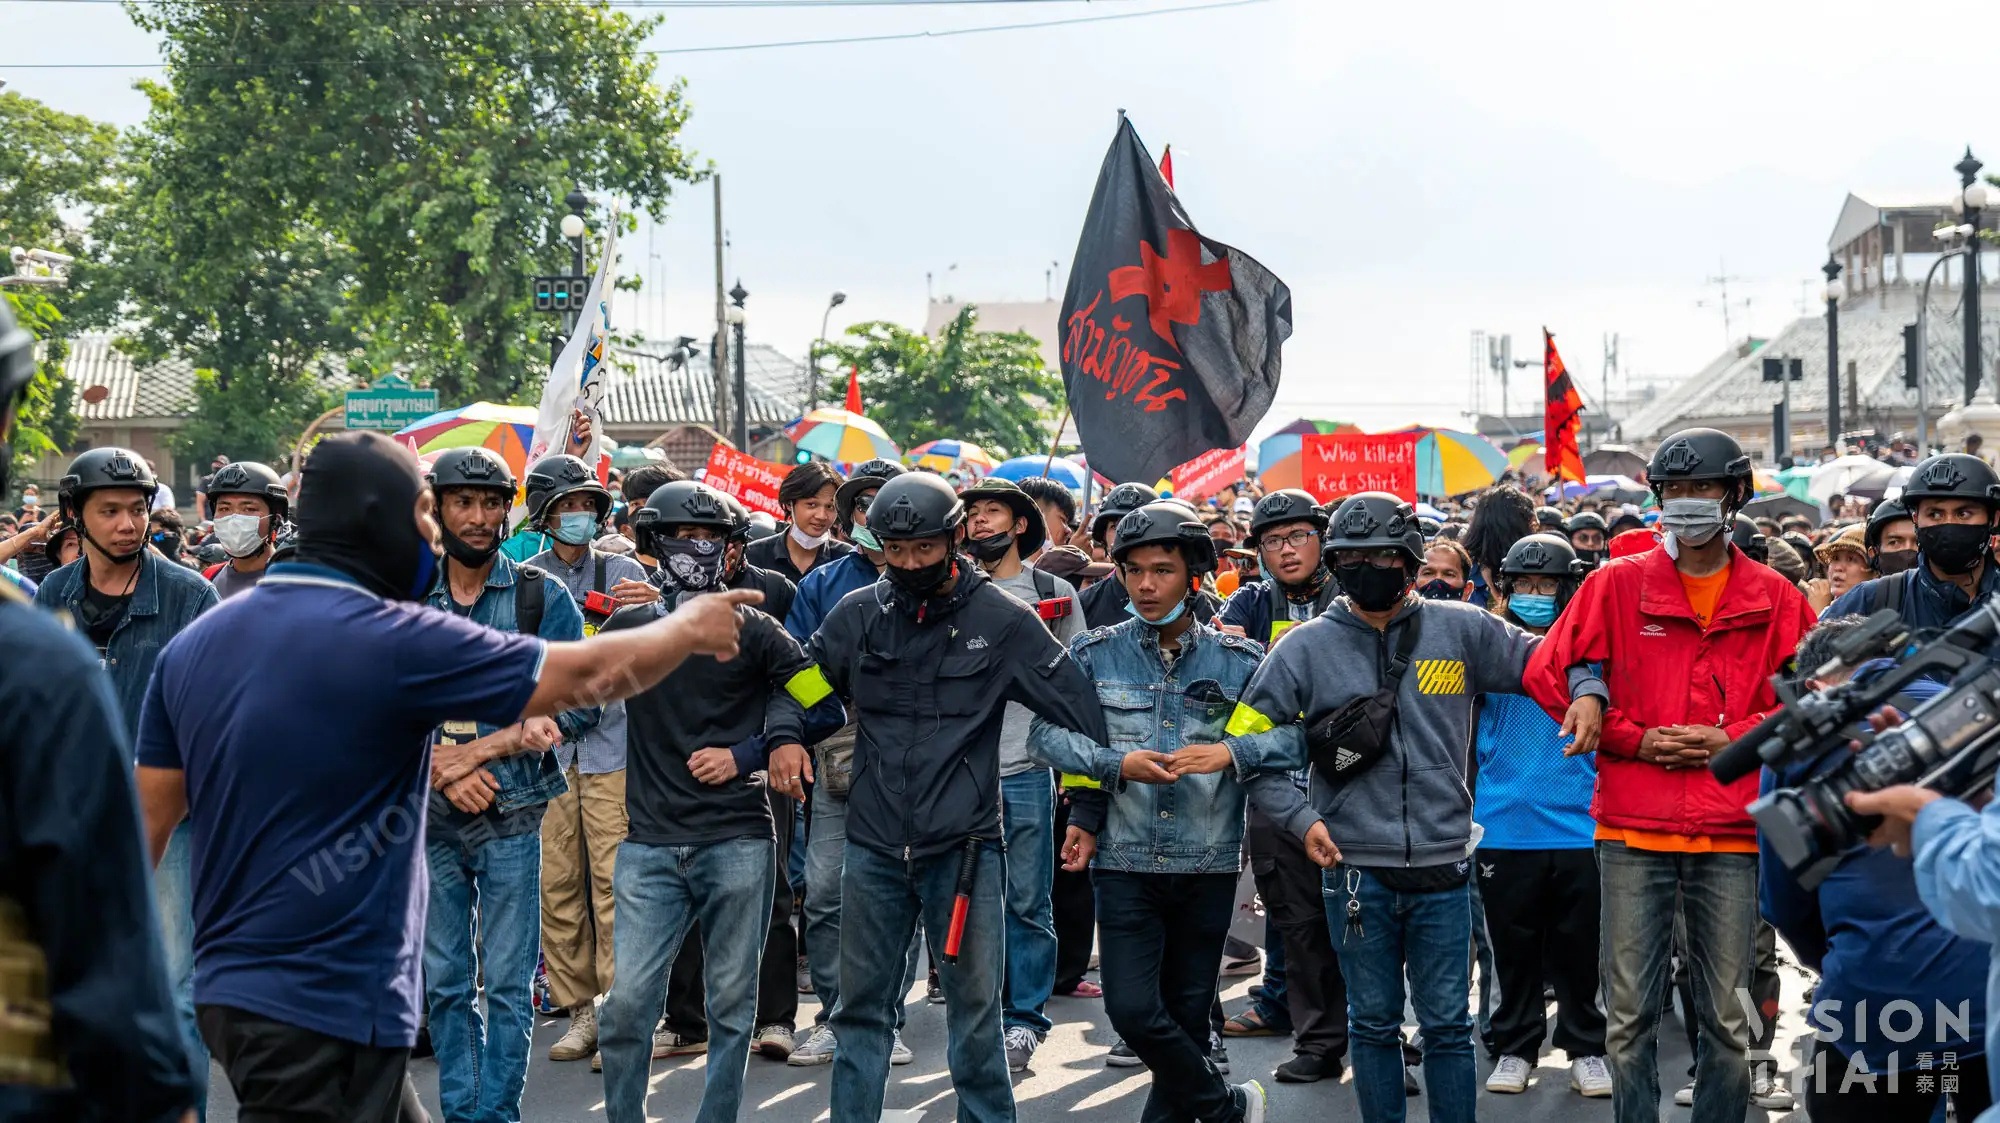 泰国反政府团体14日举行大规模游行示威活动（图片来源：VISION THAI）